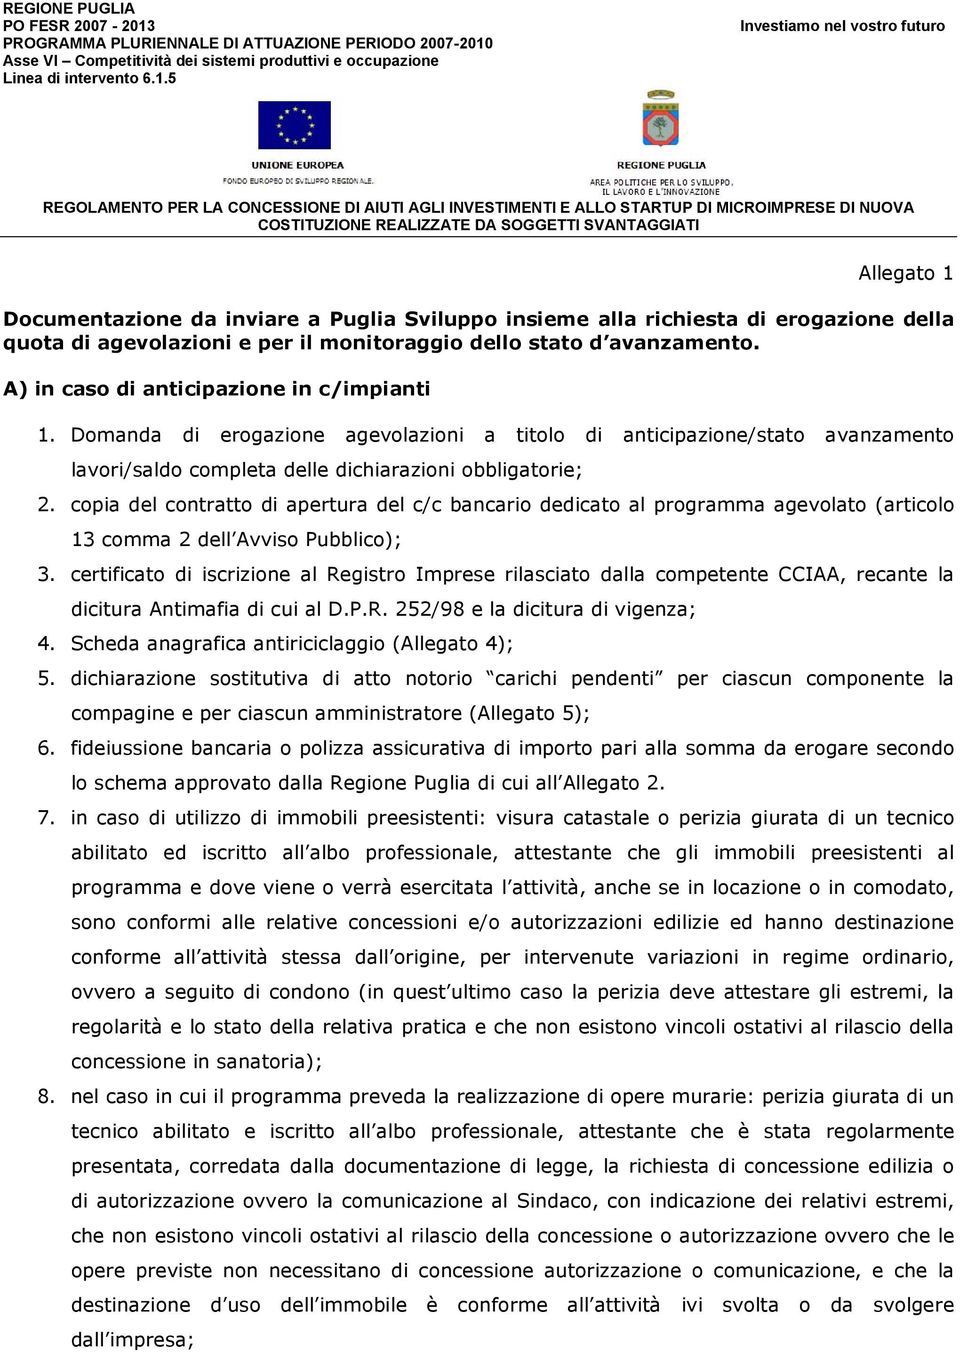 Asse VI Competitività dei sistemi produttivi e occupazione Linea di intervento 6.1.